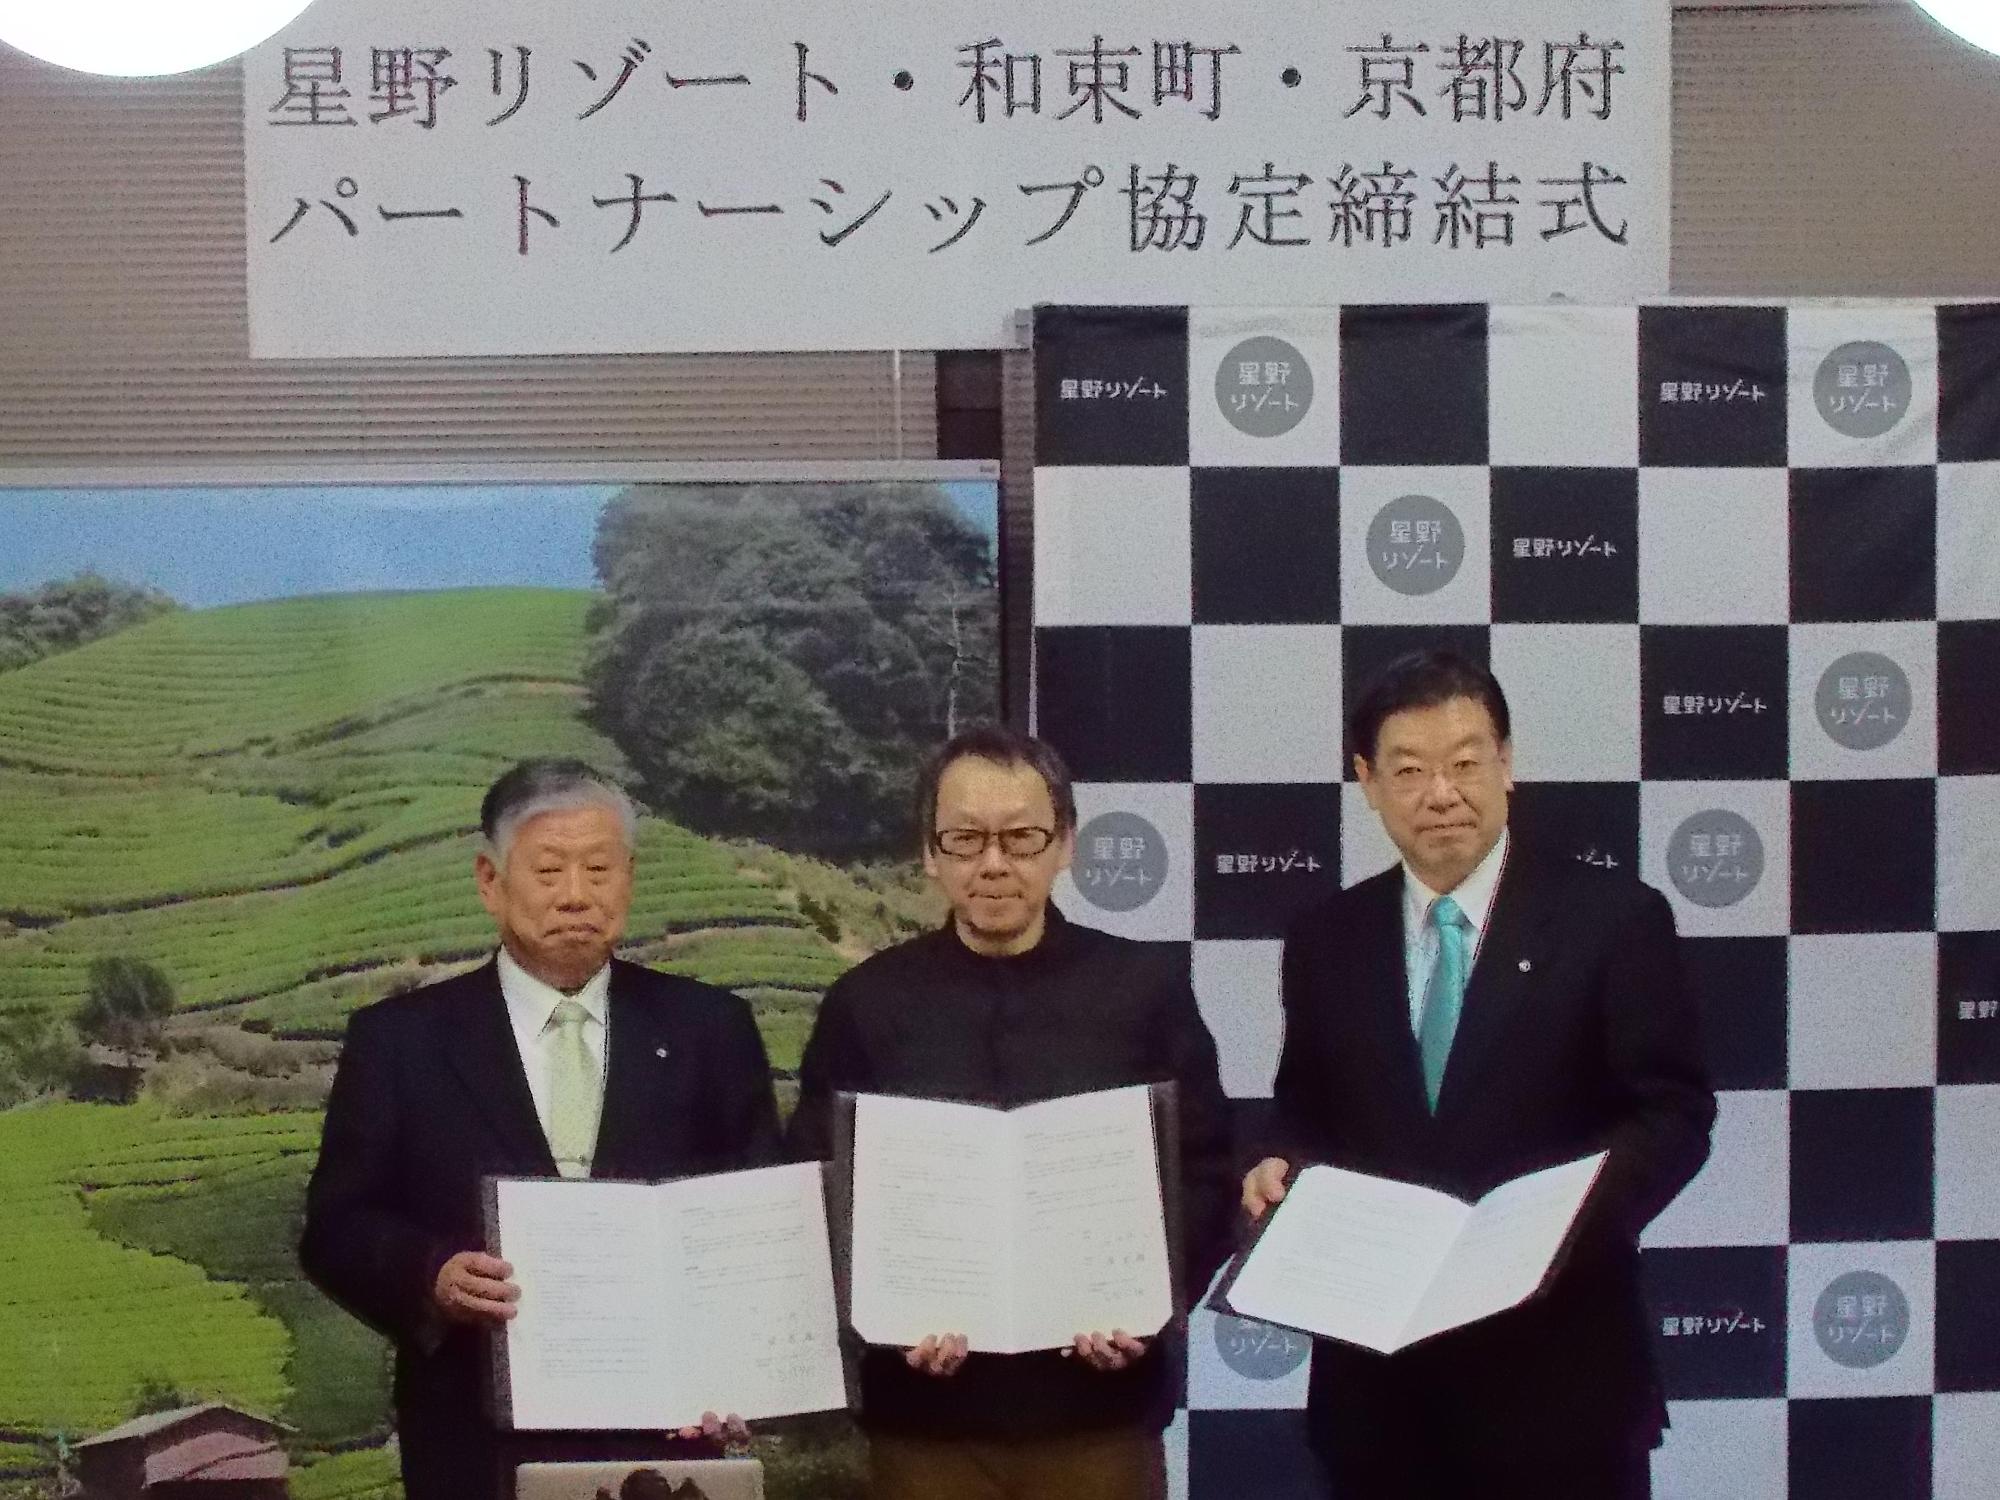 3名の男性関係者たちが協定書を開き、横一列に並んで写っている写真